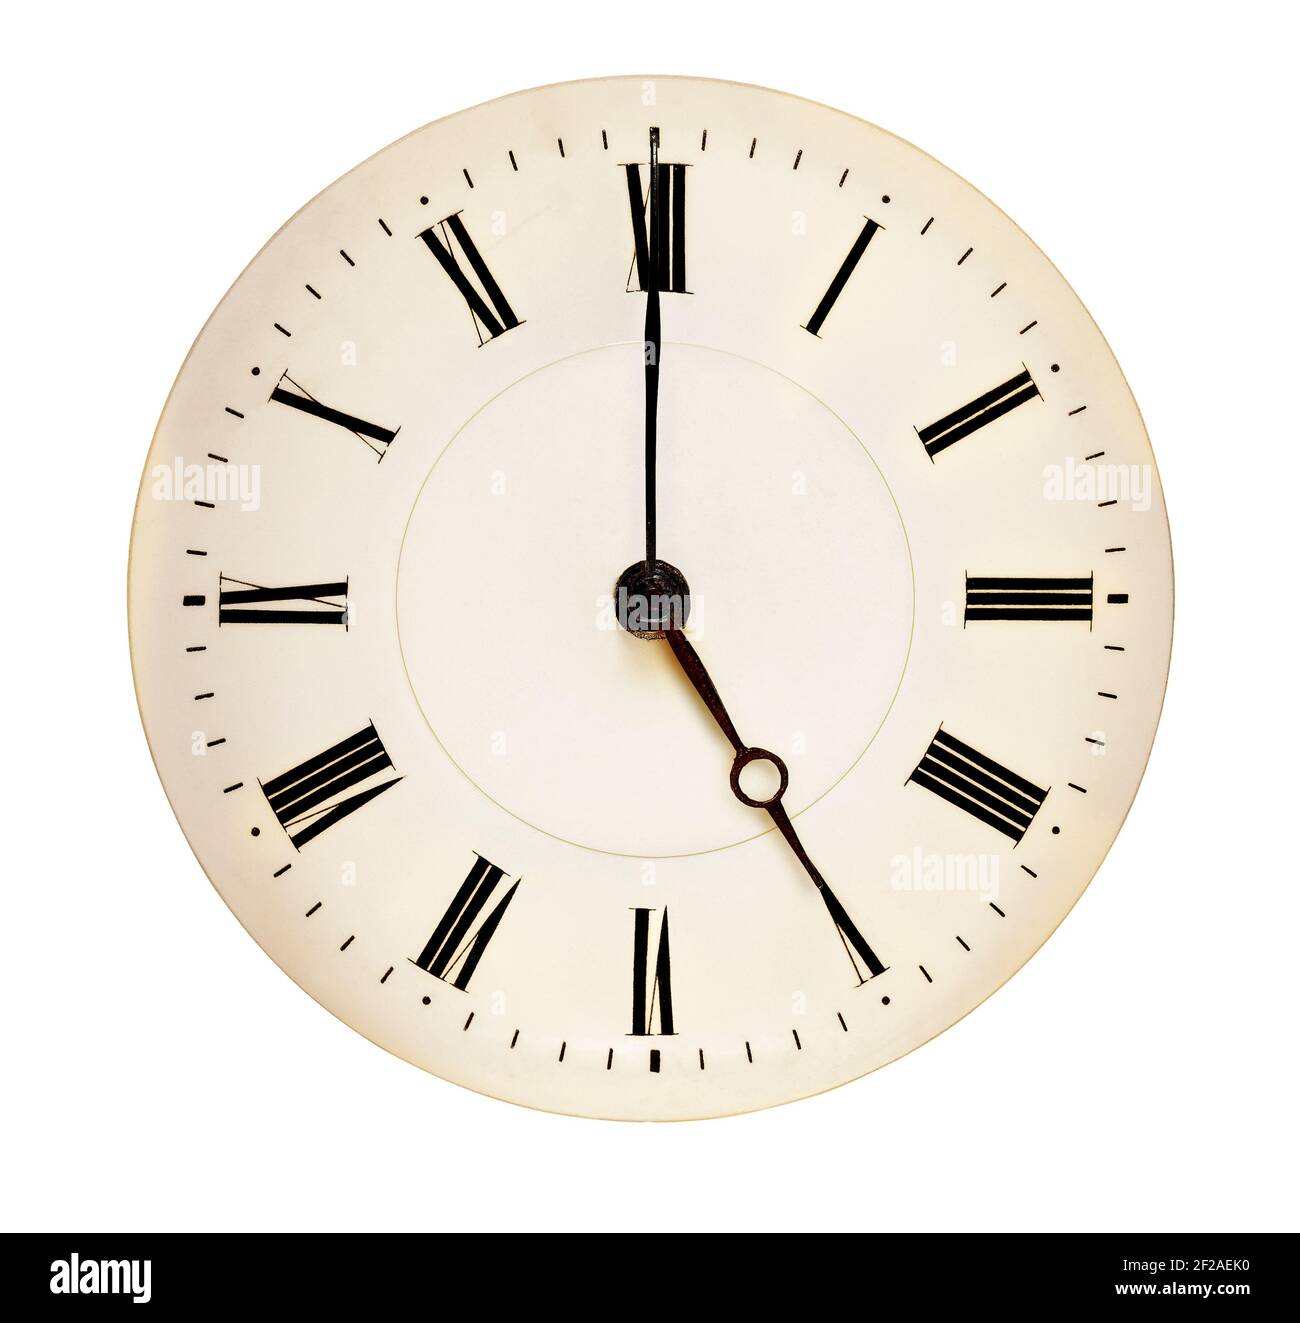 La cara del reloj antiguo que apunta a las cinco del reloj aislado contra el fondo blanco. Concepto de tiempo de té Foto de stock